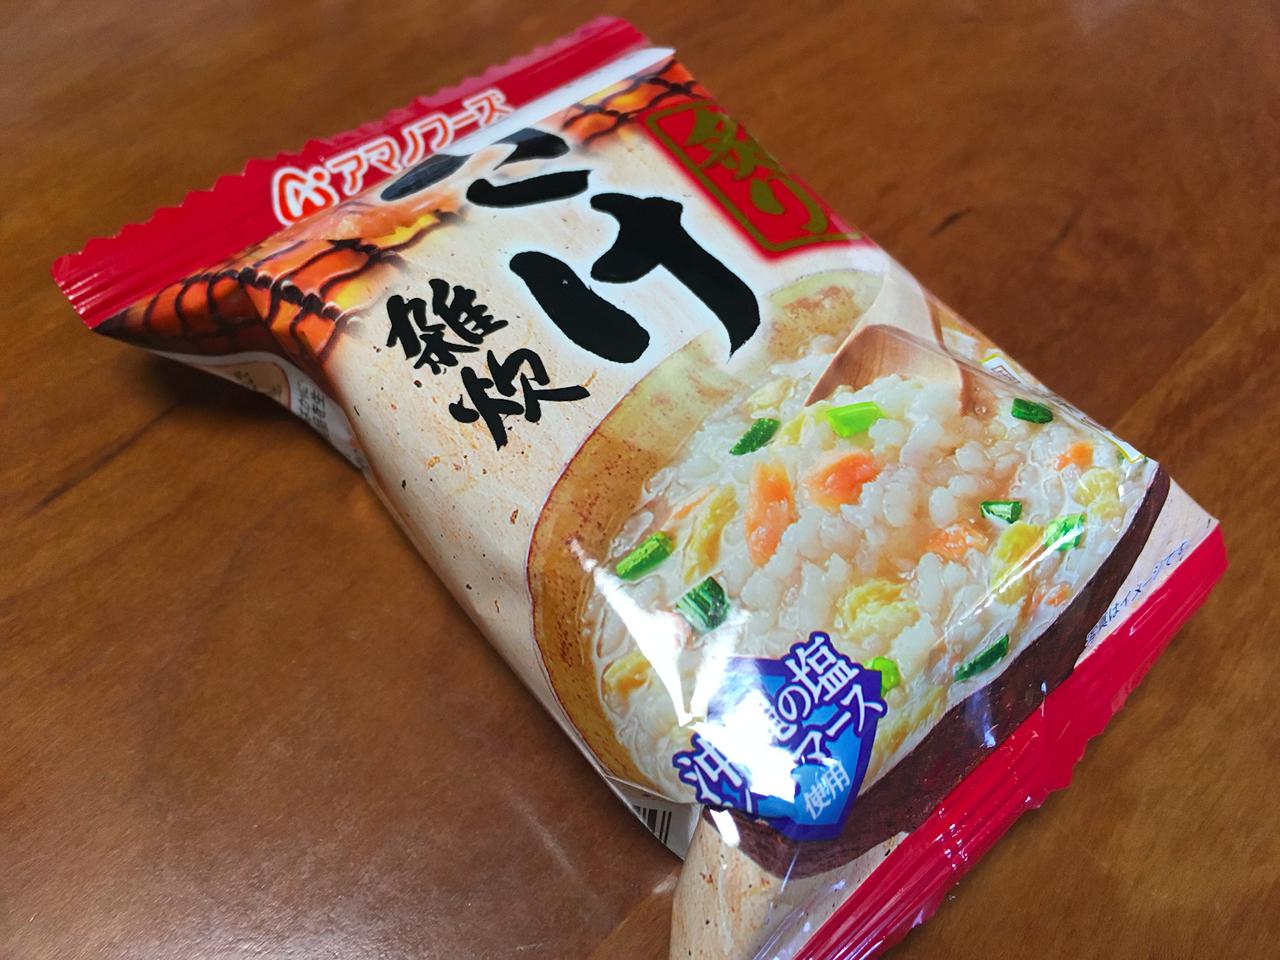 簡単山ごはんレシピ 軽量化におすすめの アルファ米 を使用したカレー飯をご紹介 お役立ちキャンプ情報 年09月14日 日本気象協会 Tenki Jp